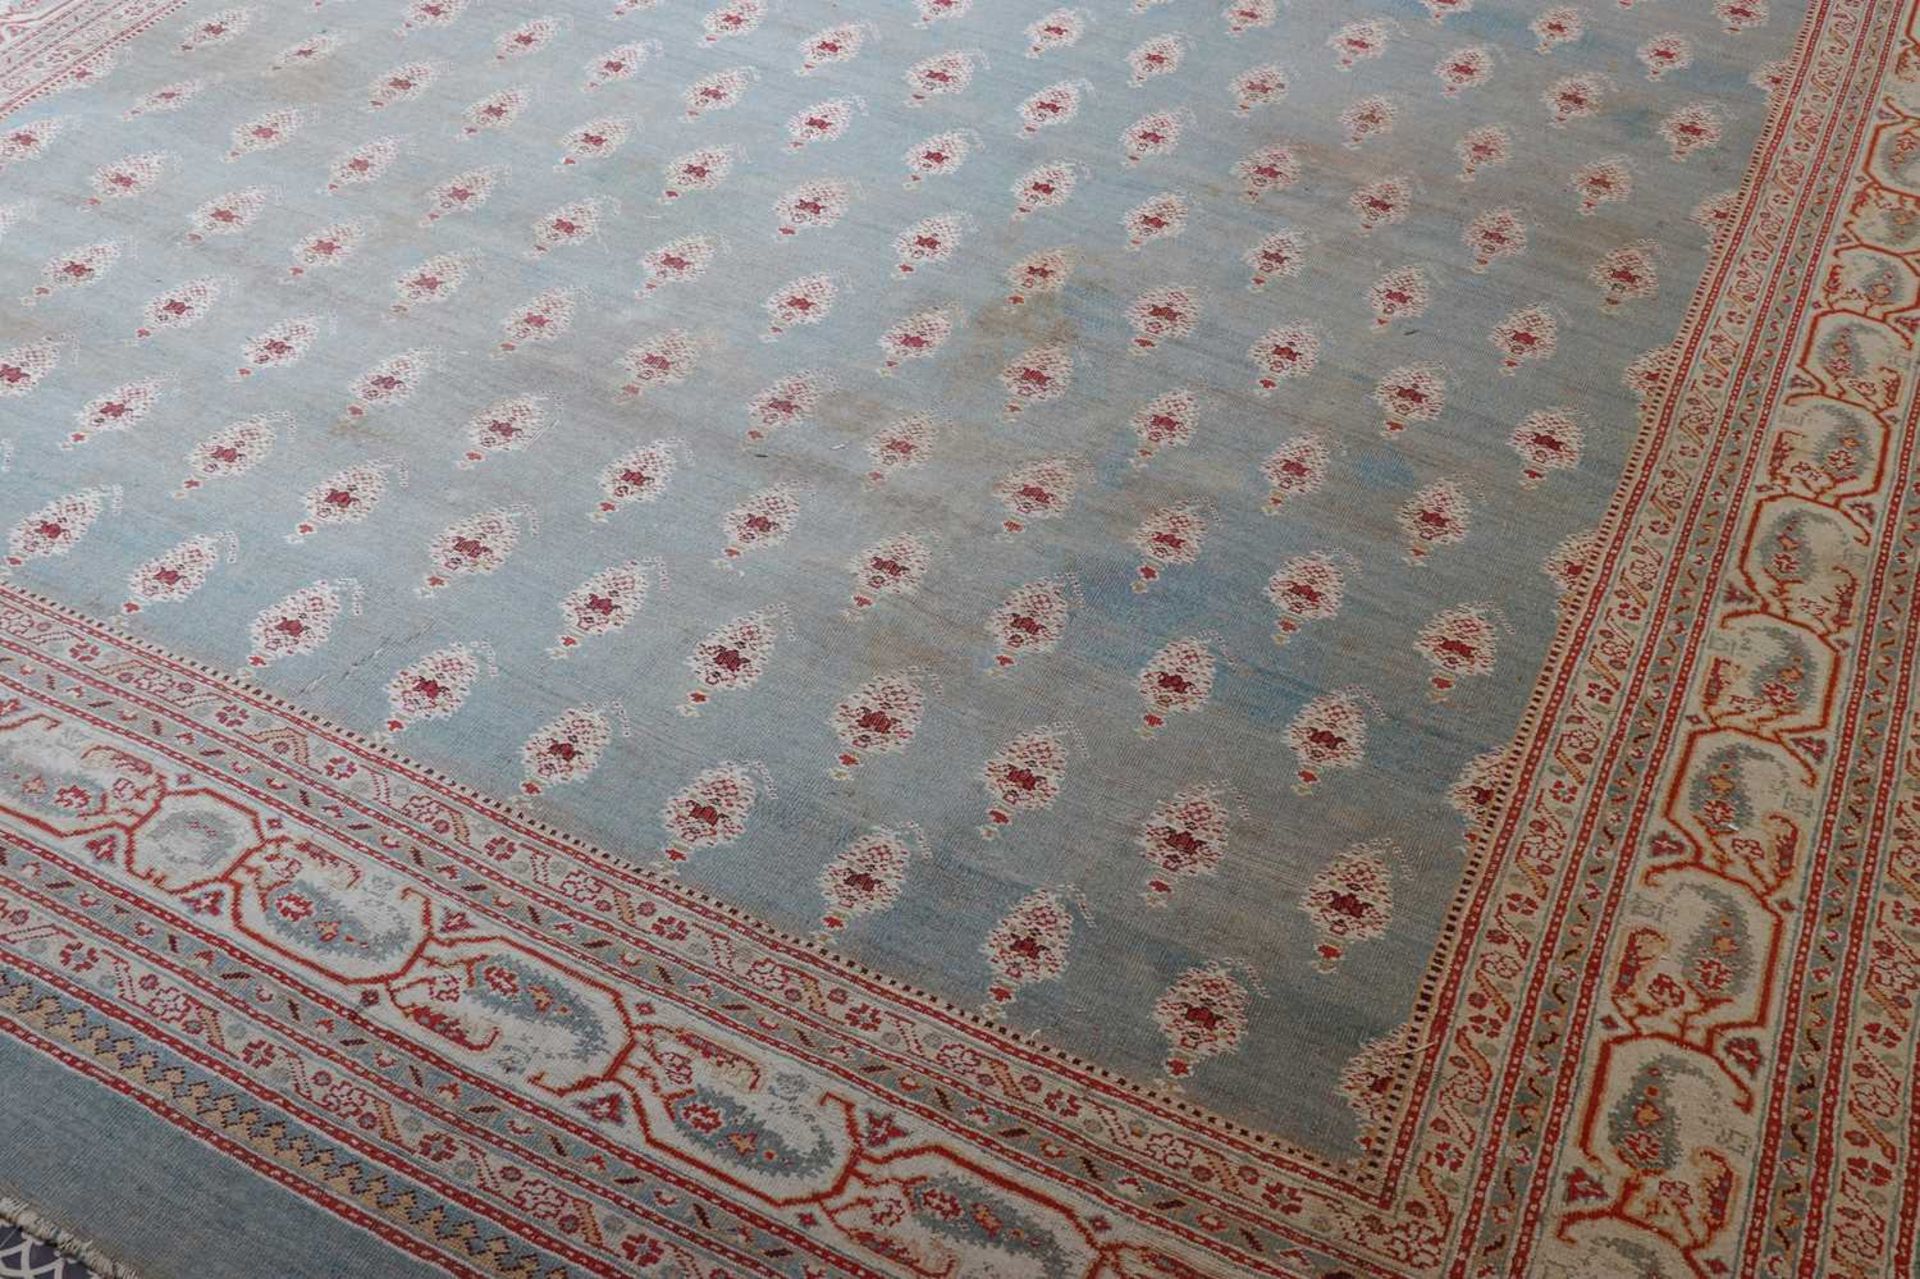 ☘ A large blue Amritsar carpet, - Image 11 of 38